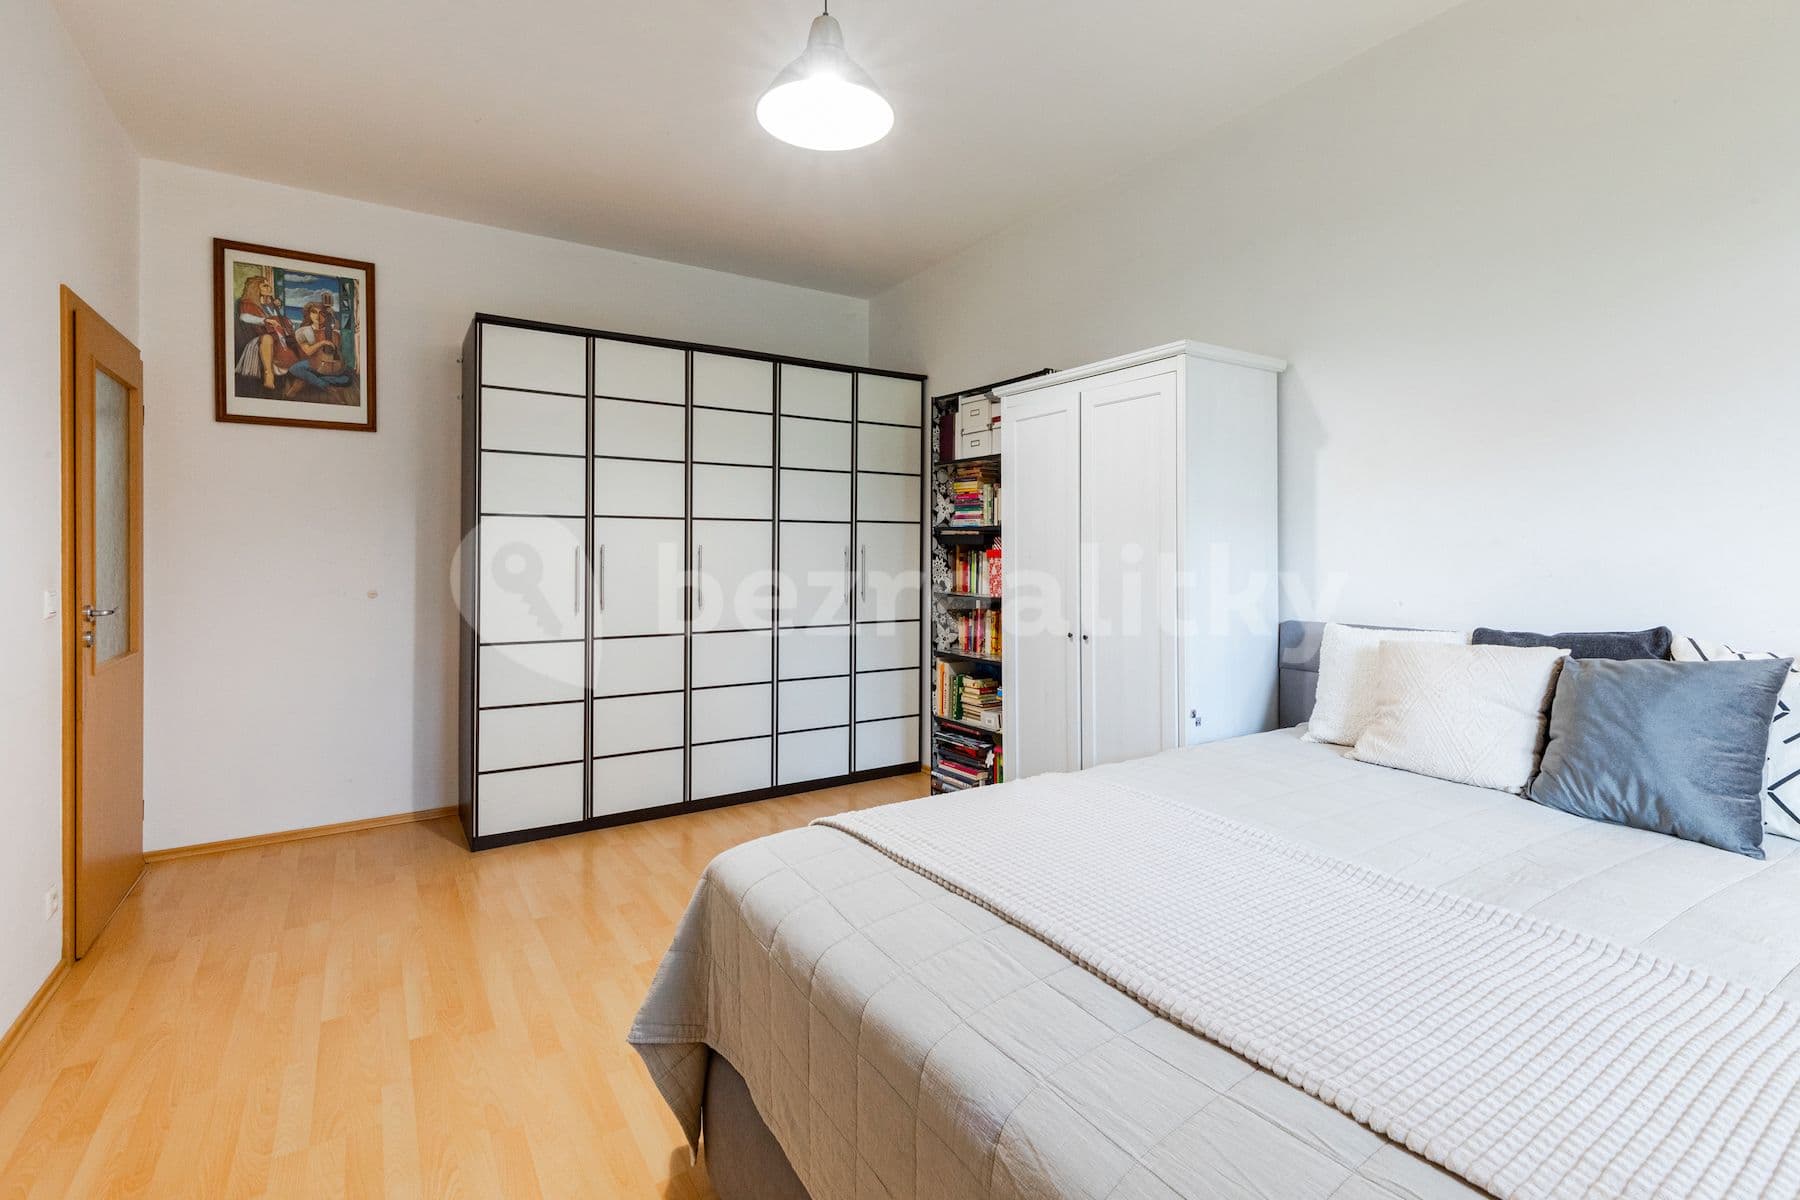 2 bedroom with open-plan kitchen flat for sale, 67 m², Lomená, Zbuzany, Středočeský Region